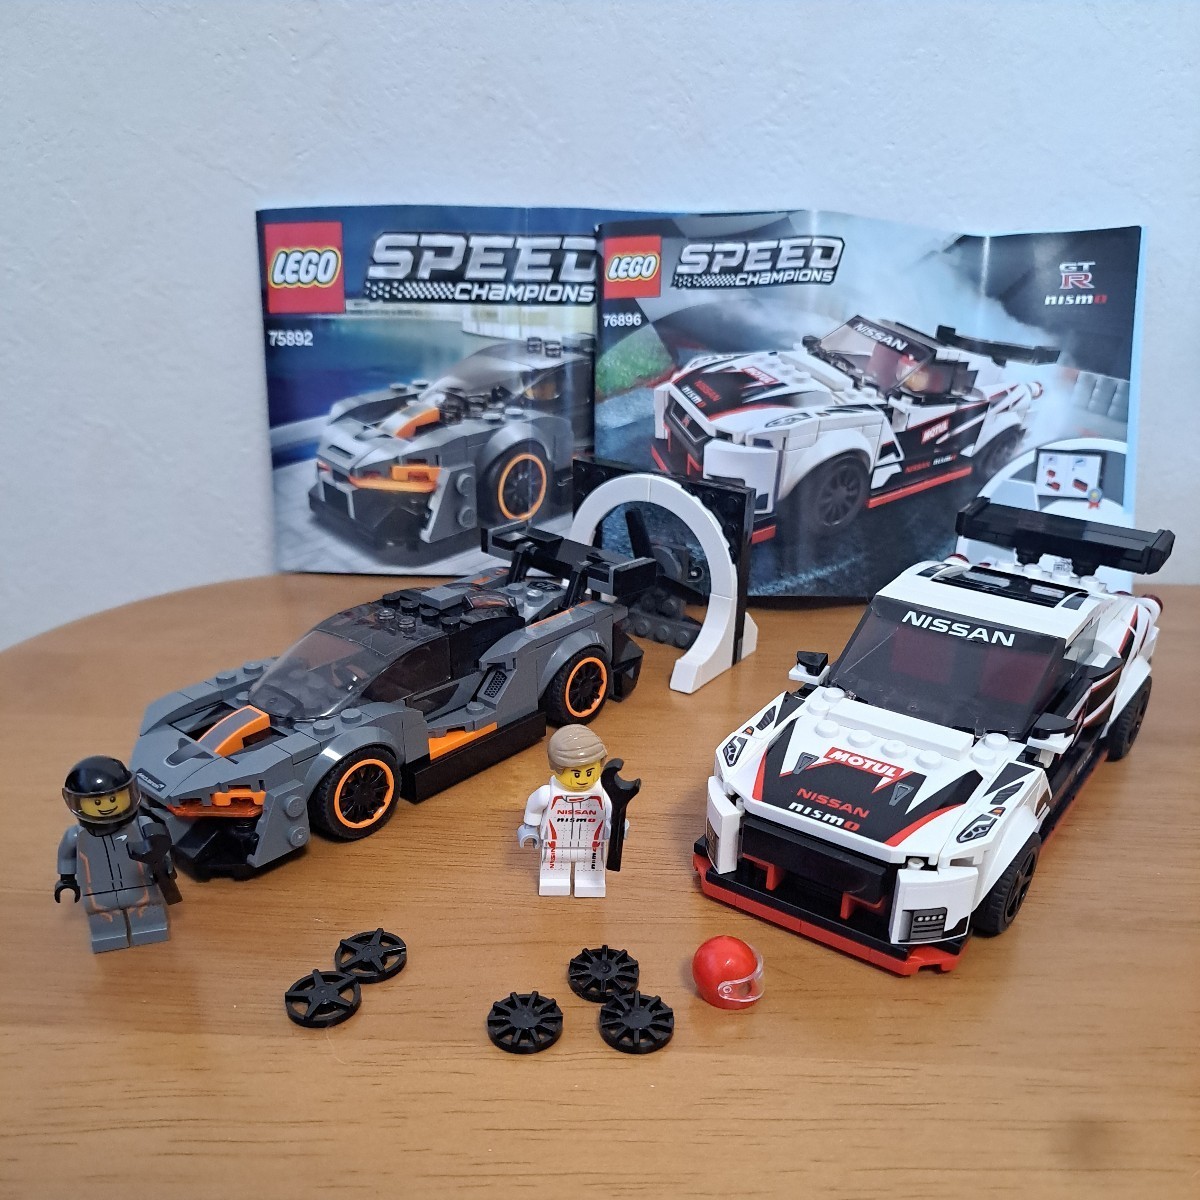 LEGO レゴ 75892 スピードチャンピオン マクラーレン・セナ 76896 日産 